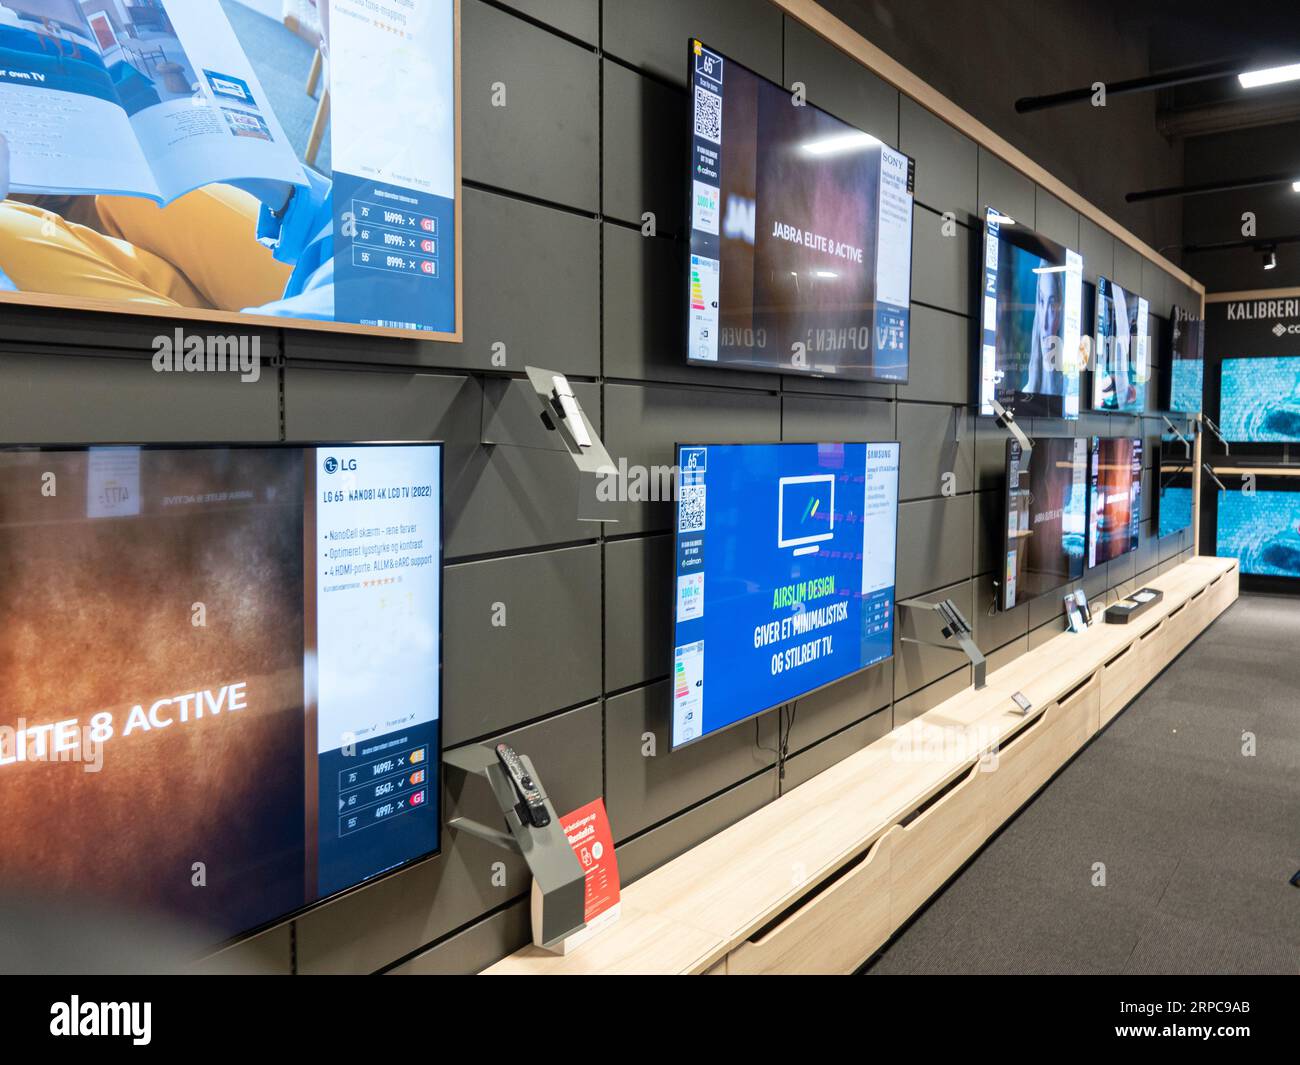 Télévision écrans plats sur les étagères d'un magasin. Copenhague, Danemark, 2 septembre 2023. Banque D'Images